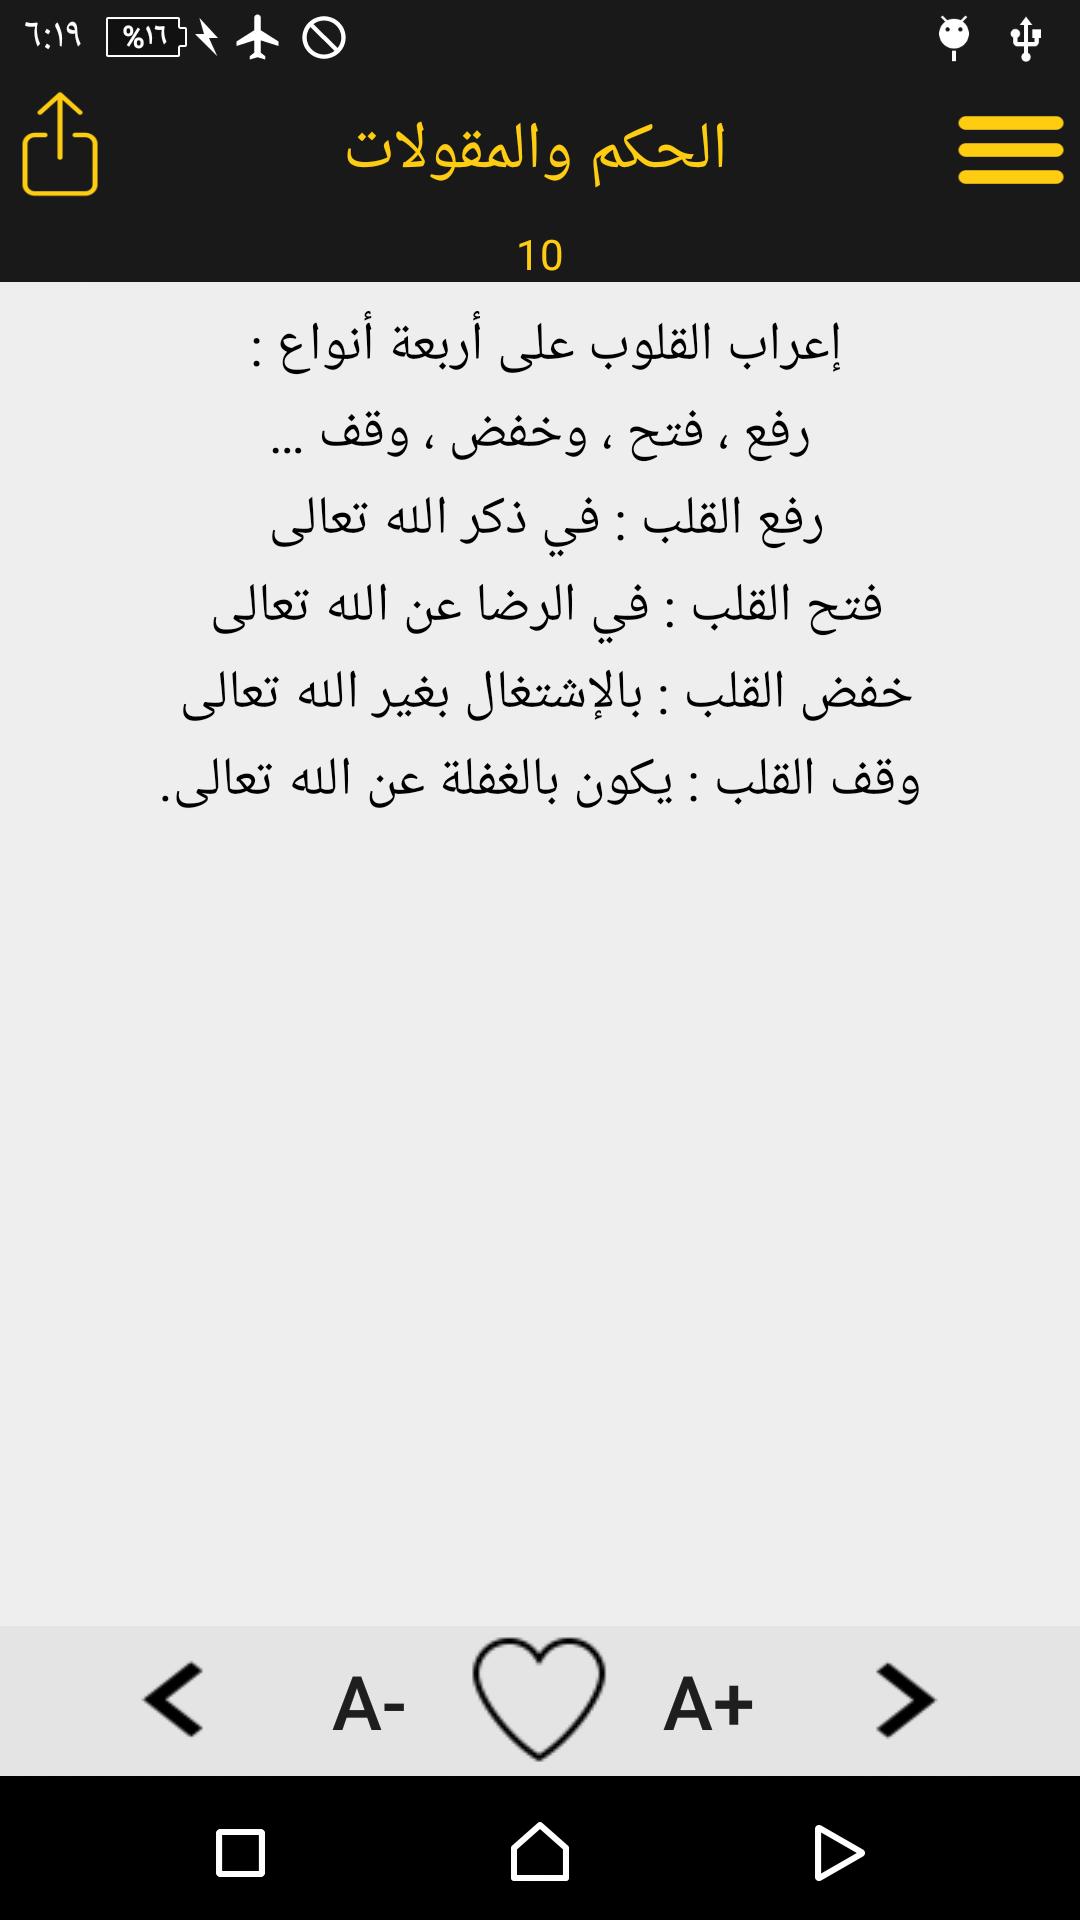 كلام من ذهب : أبو حامد الغزالي for Android - APK Download